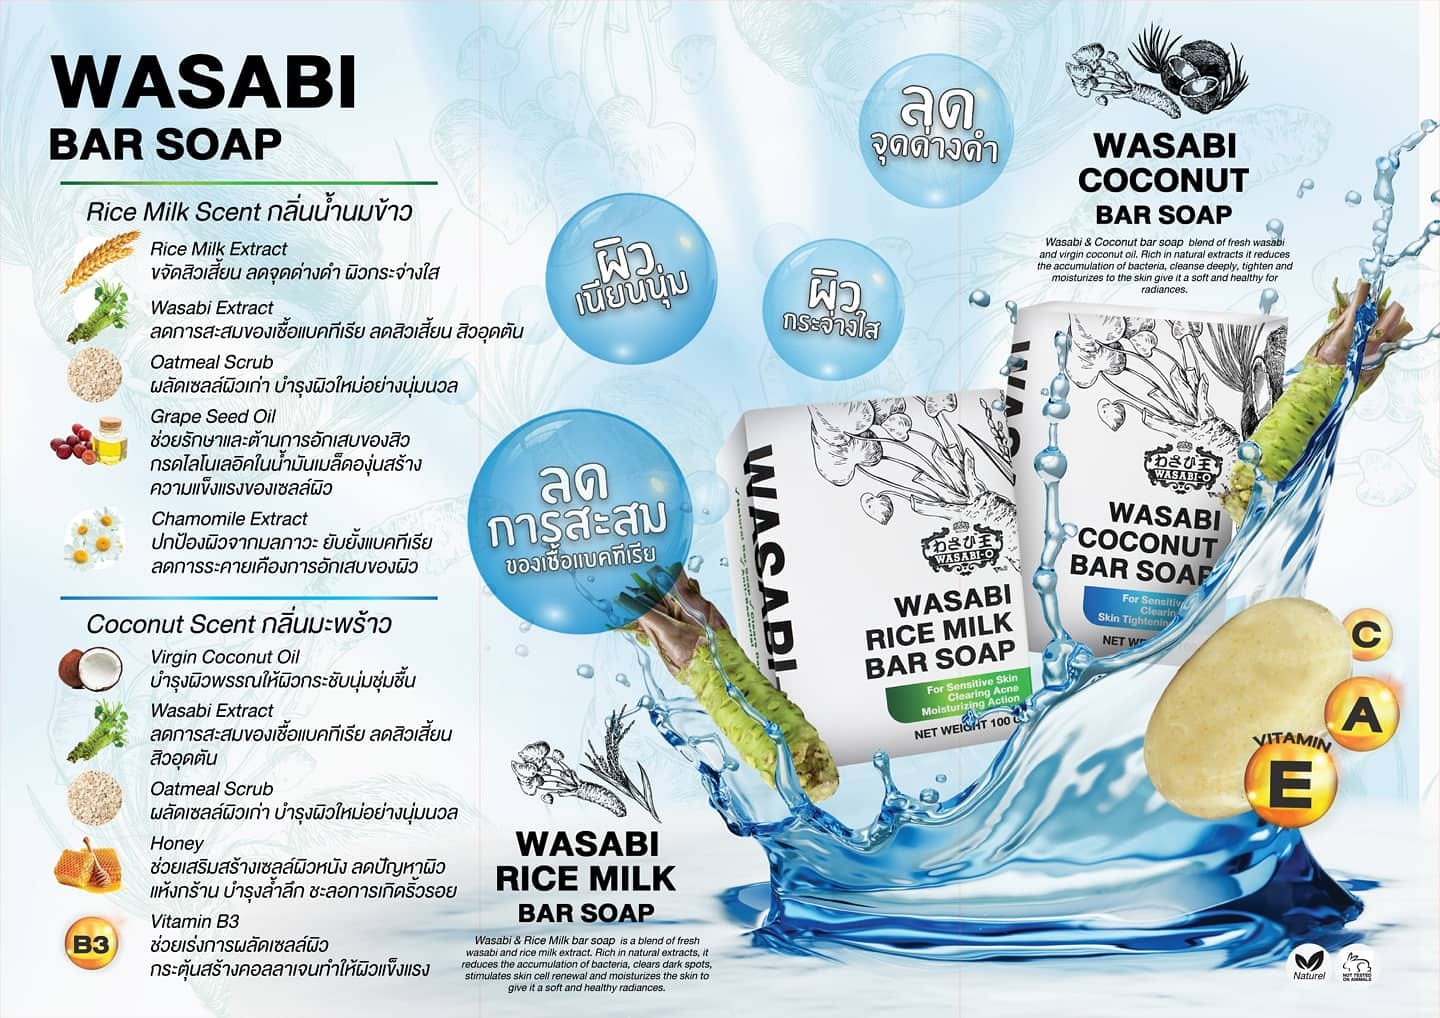 WASABI-O Wasabi & Rice Milk Bar Soap 100g สบู่วาซาบิและน้ำนมข้าว ช่วยลดสิว การสะสมของเชื้อแบคทีเรีย ลดจุดด่างดำ ผลัดเซลล์ผิวและบำรุงผิวหน้าให้เนียนนุ่มชุ่มชื้น